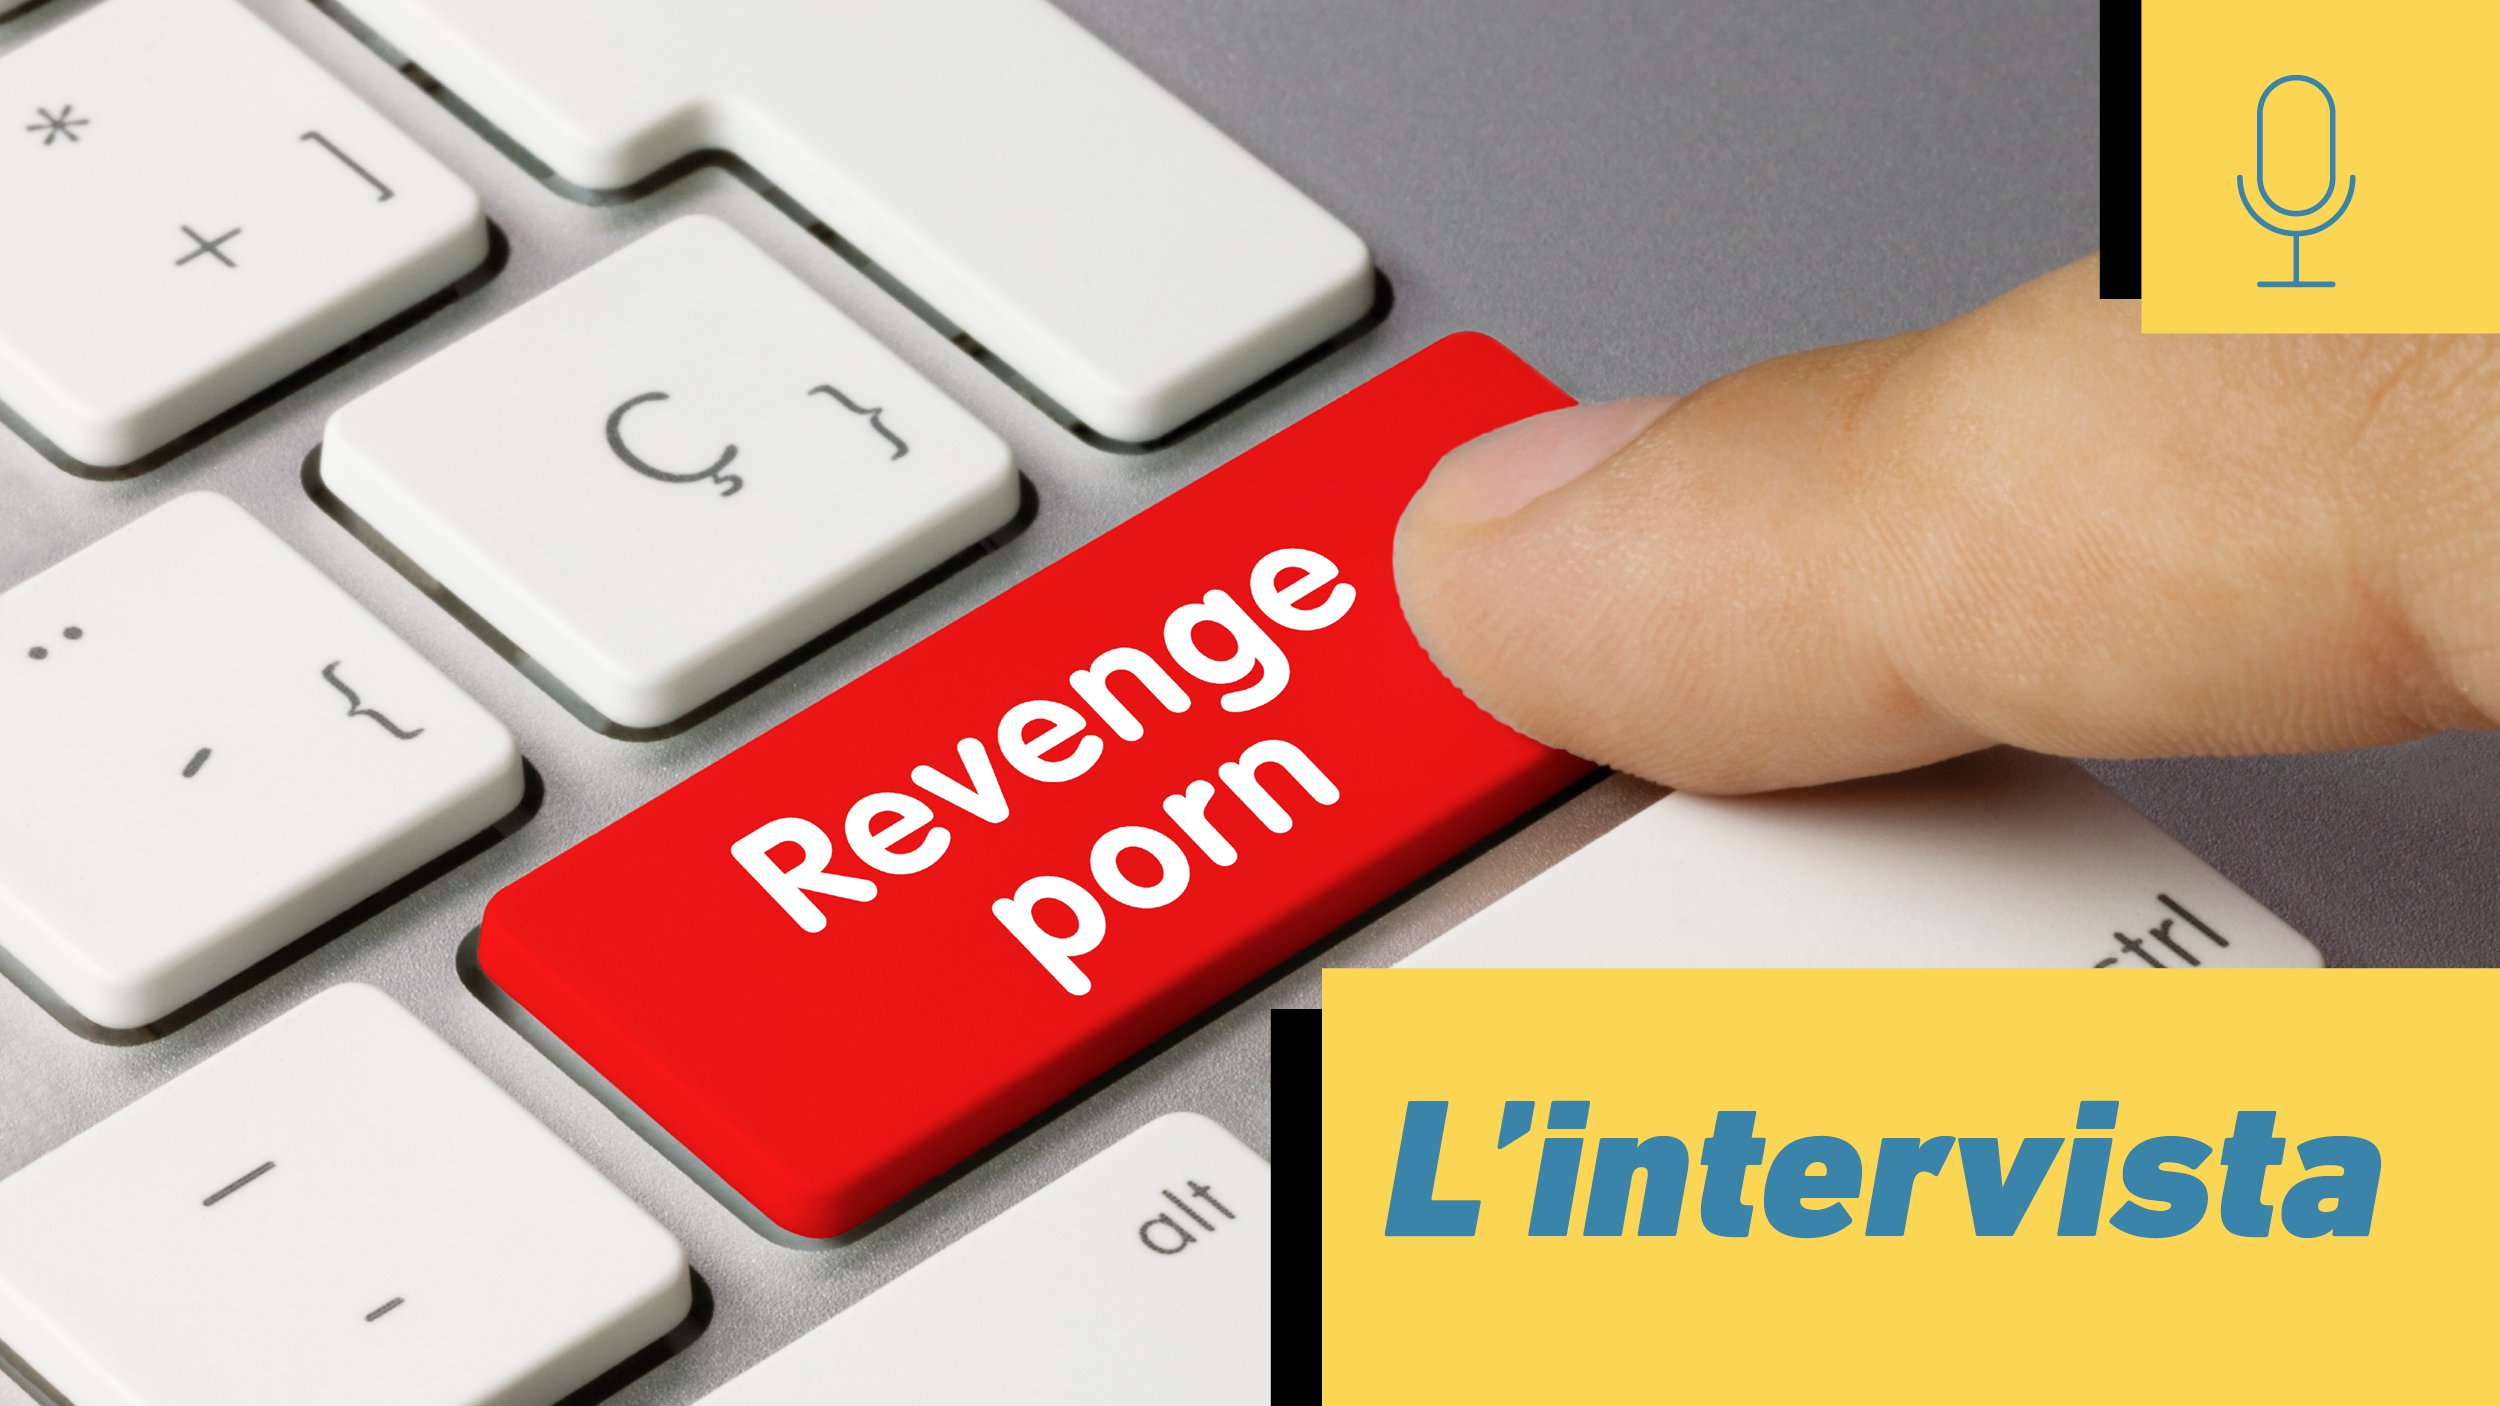 Revenge_porn_Intervista_converted.png